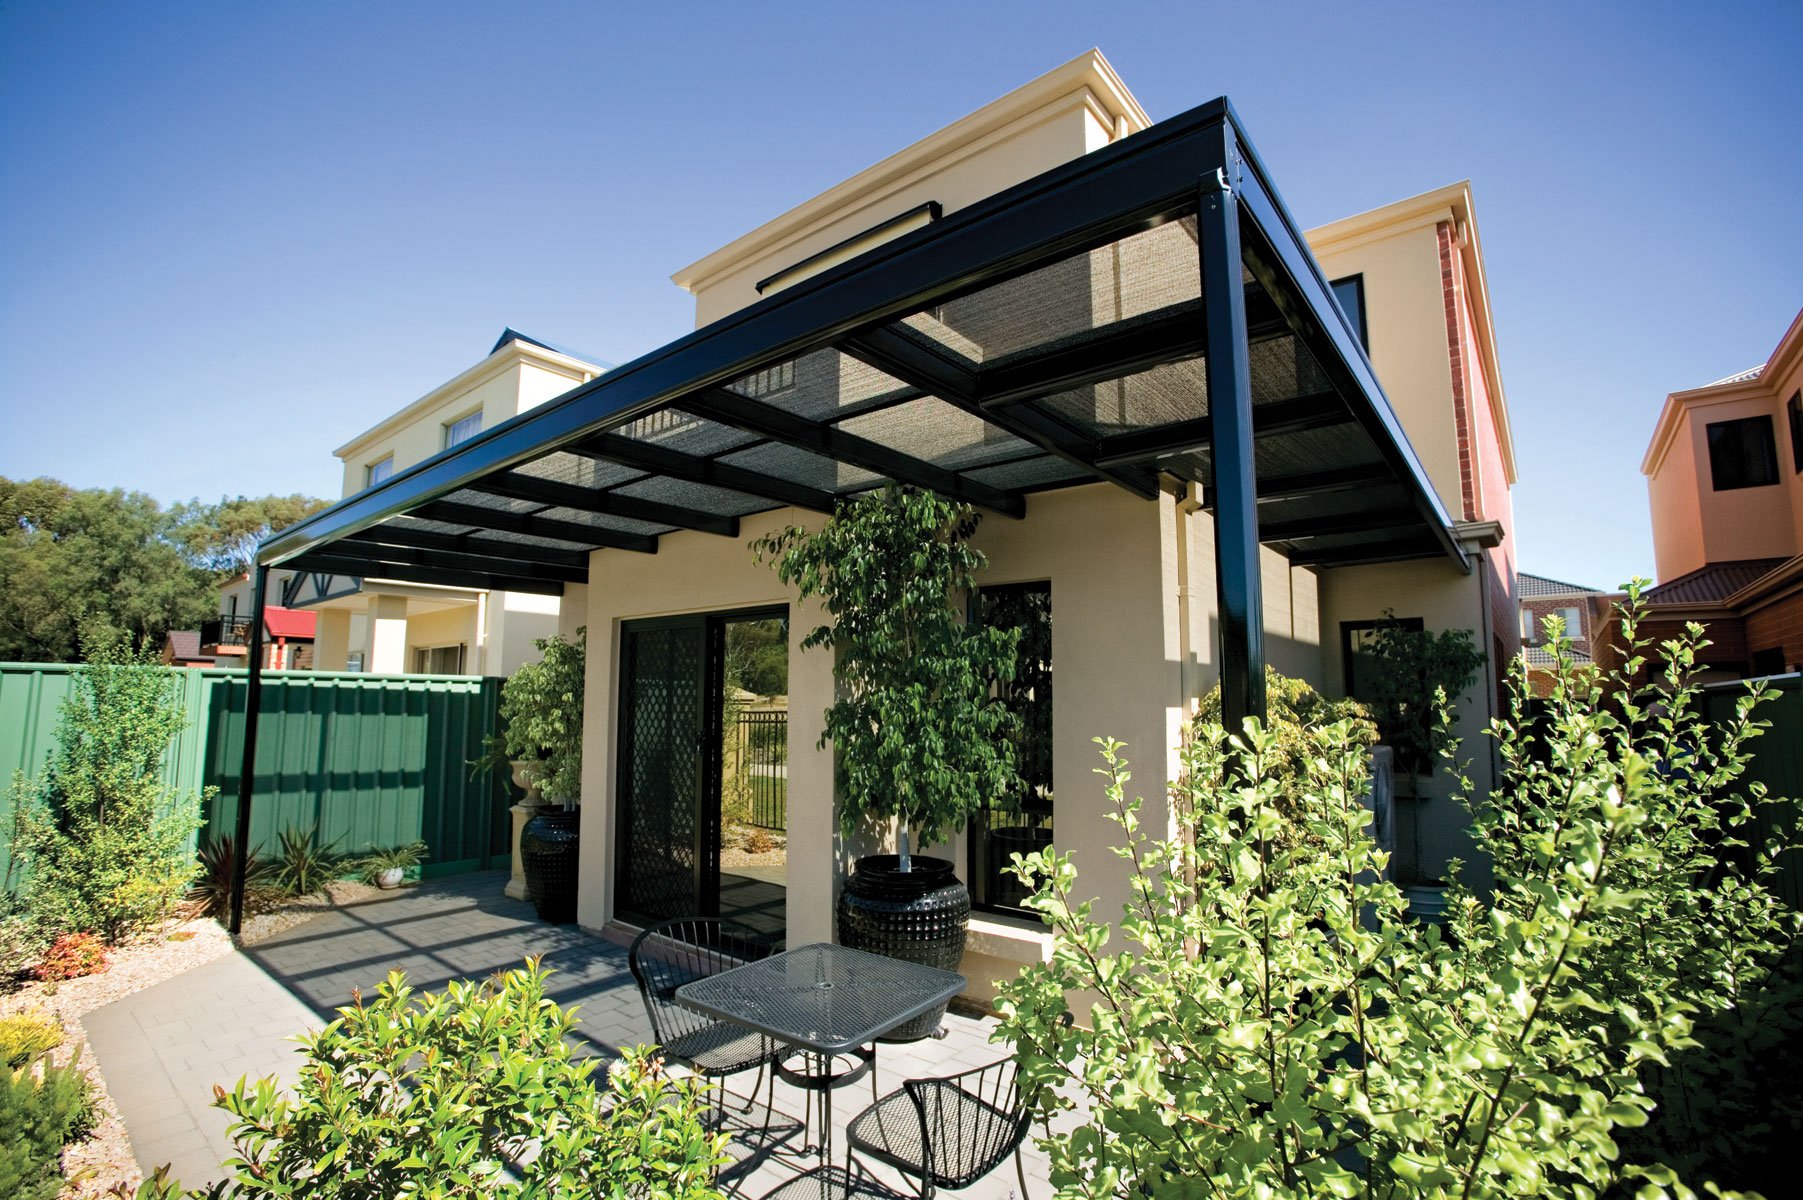 patios-verandah-carport-outback-pergola-25 (1)